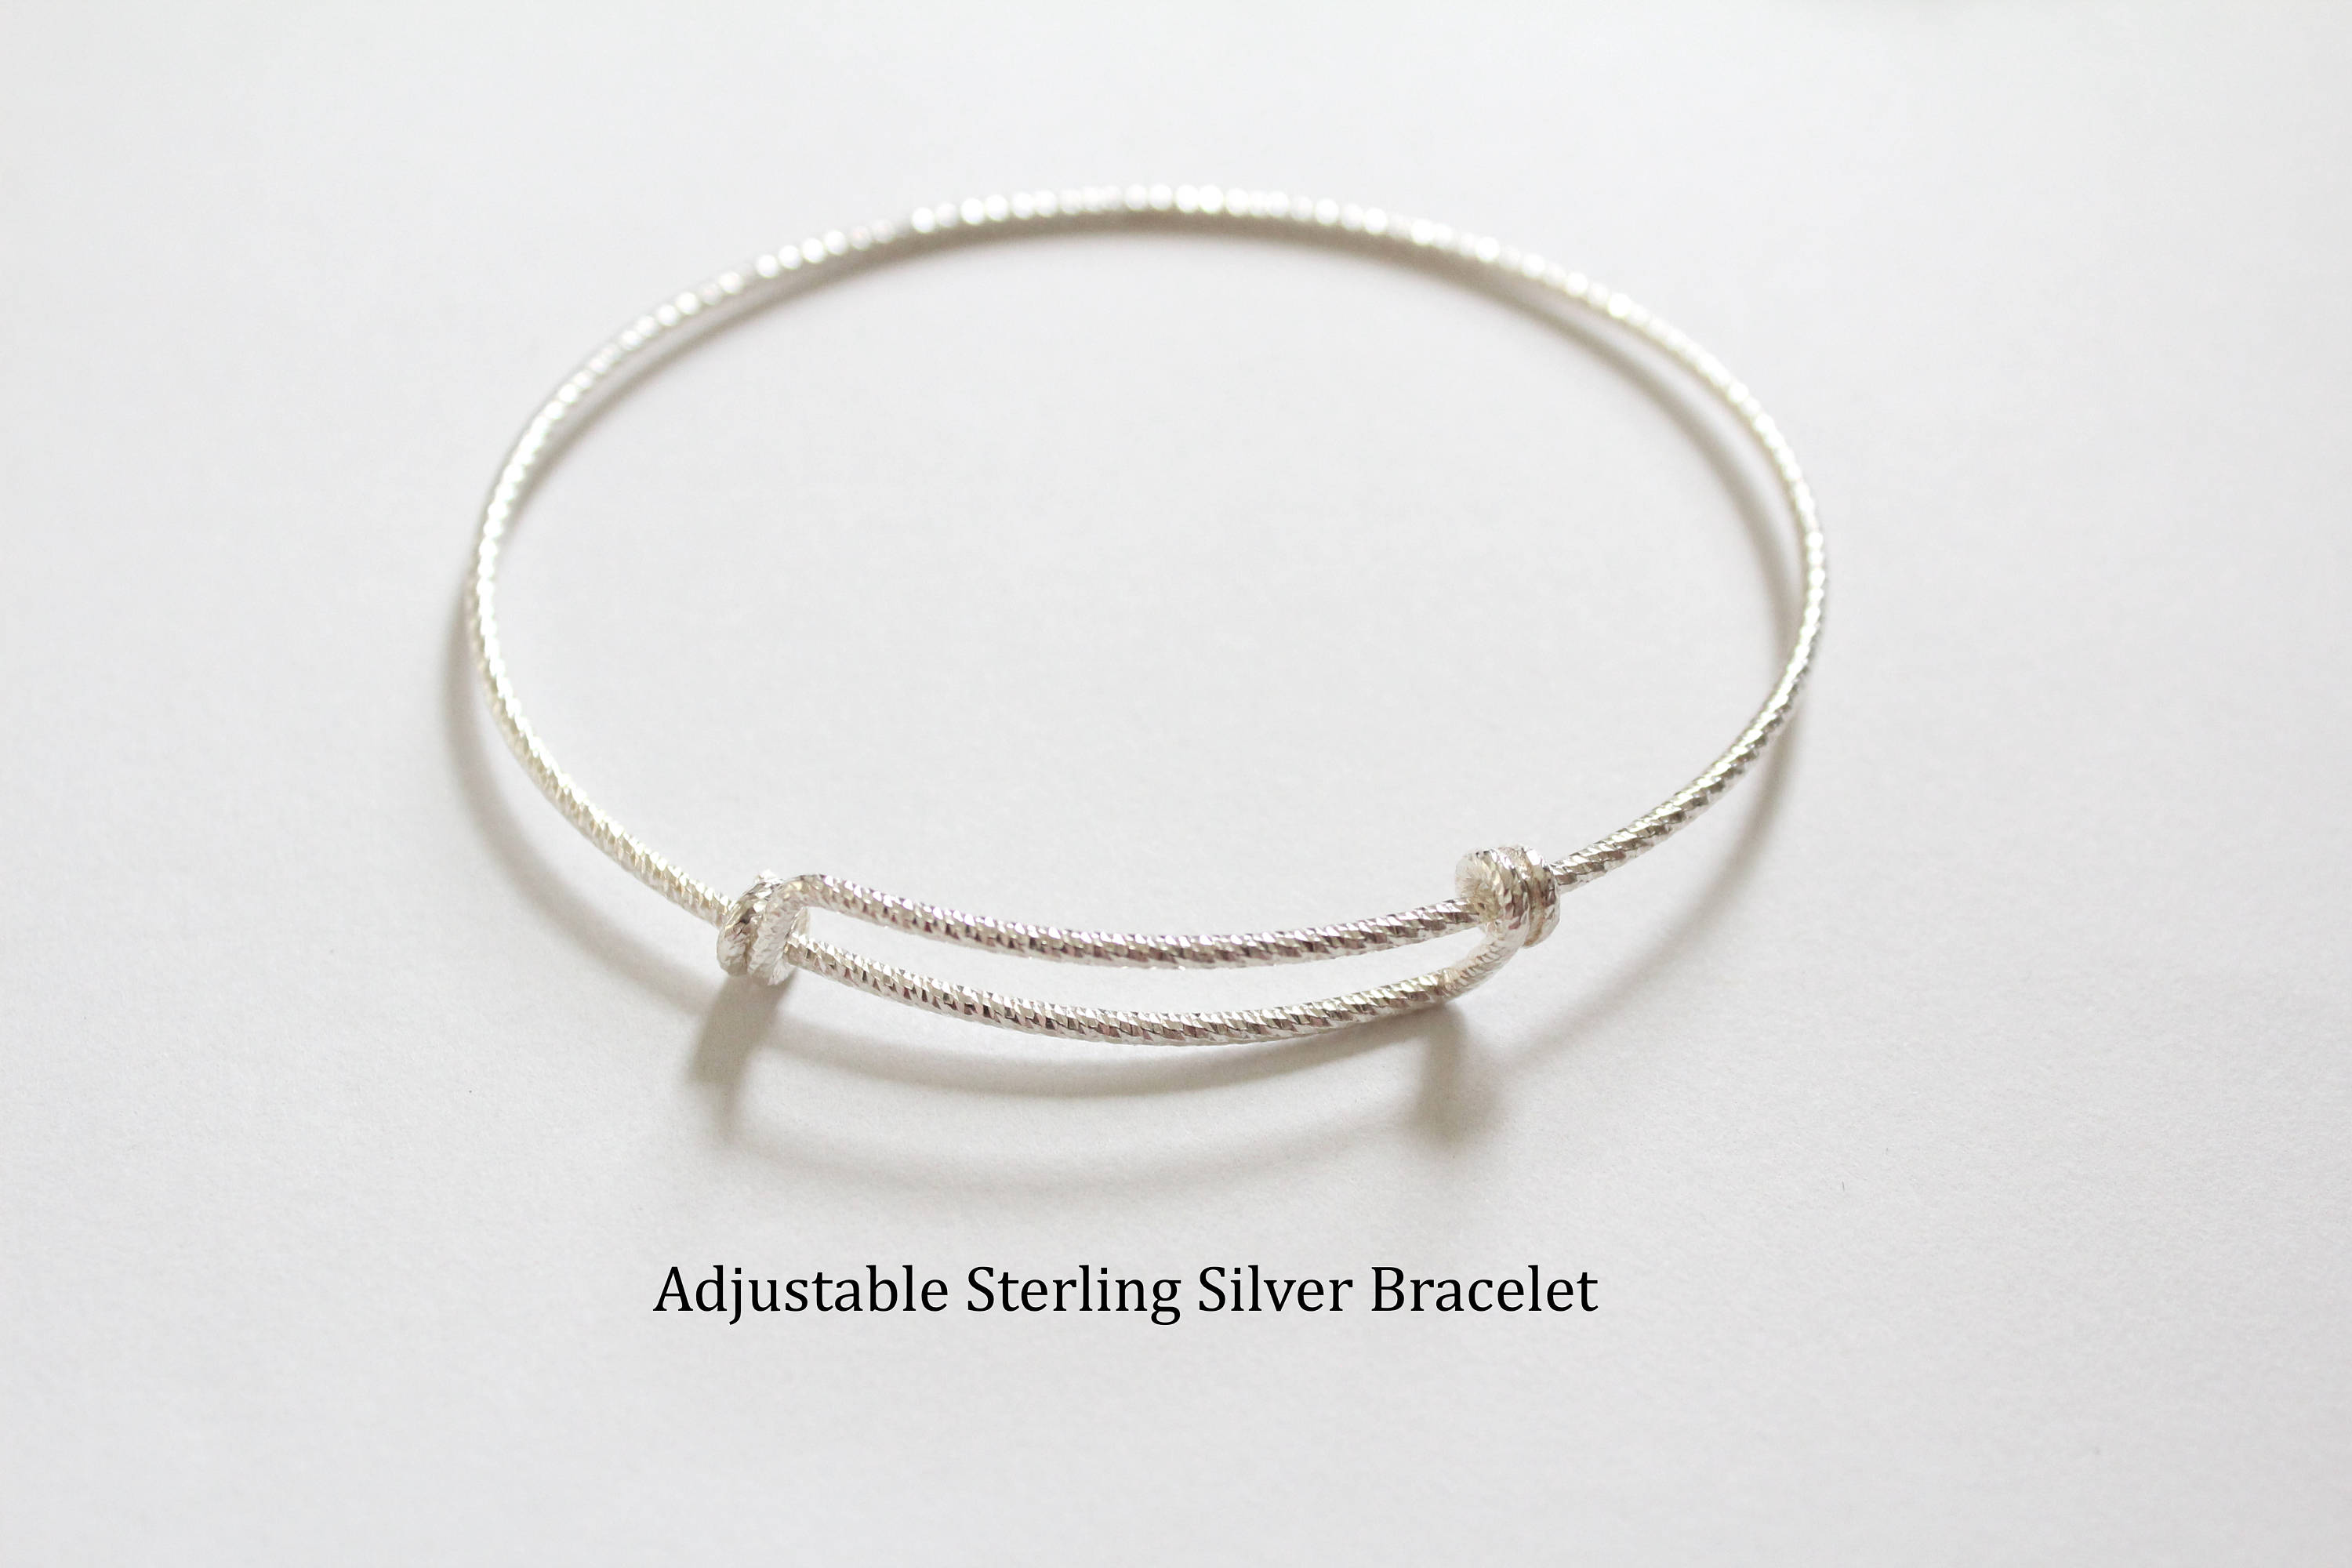 Prana Dots Good Luck Bracelet Sterling Silver / Medium 6-7